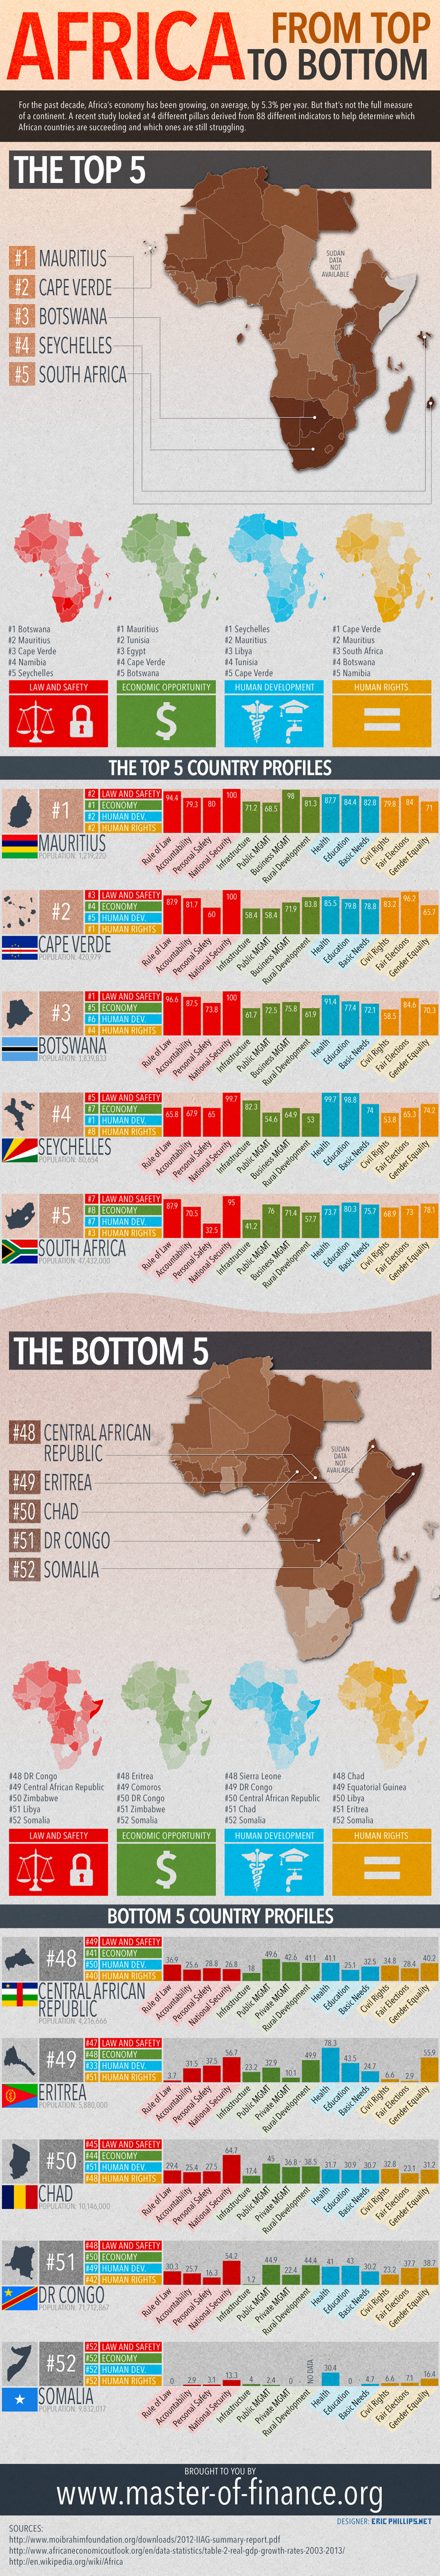 The Top Economies in Africa